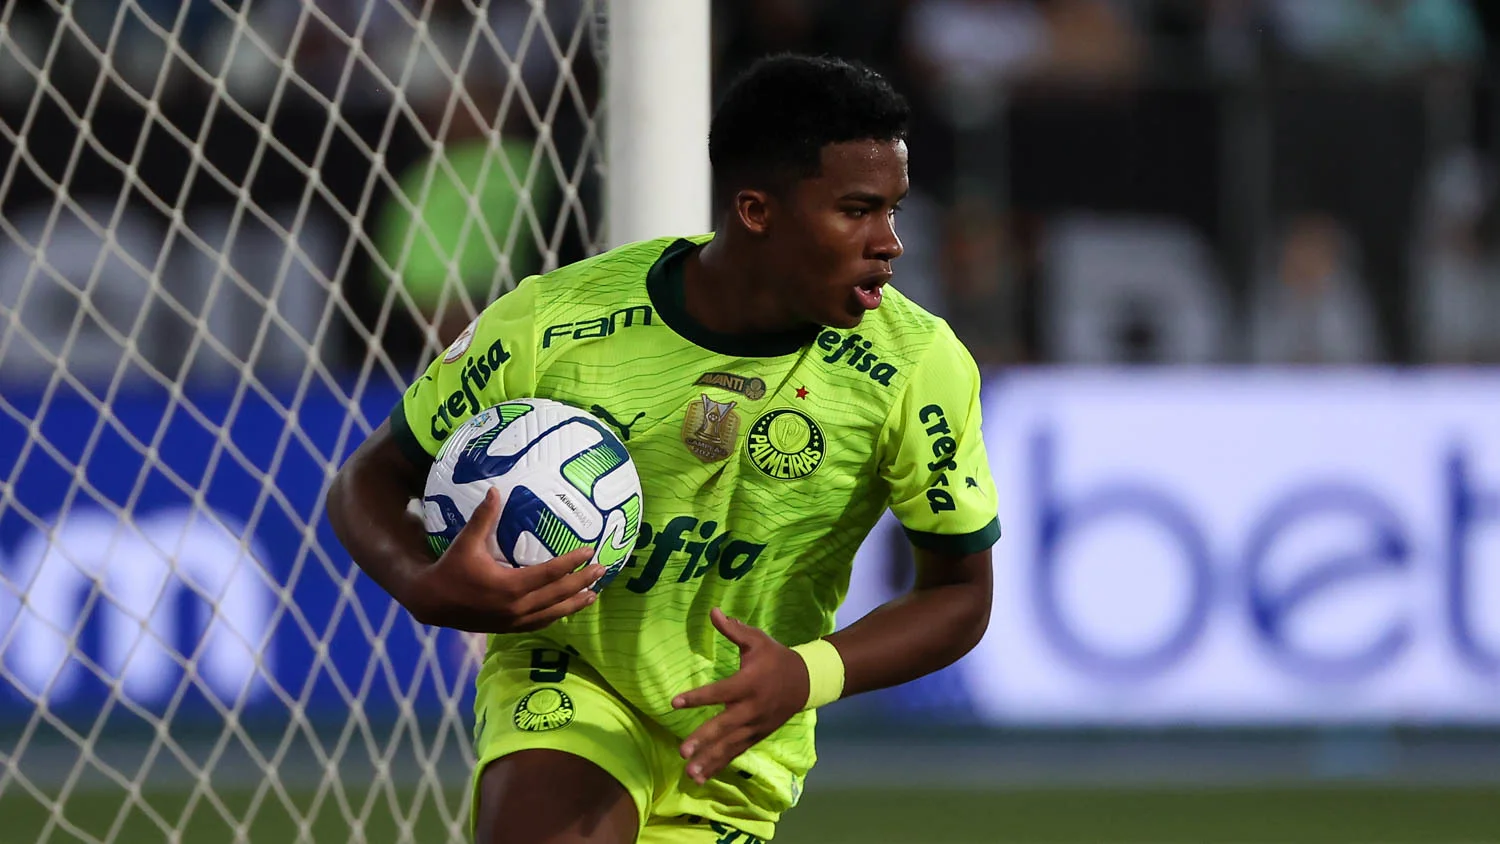 Palmeiras decide título do Paulistão Feminino contra o Santos